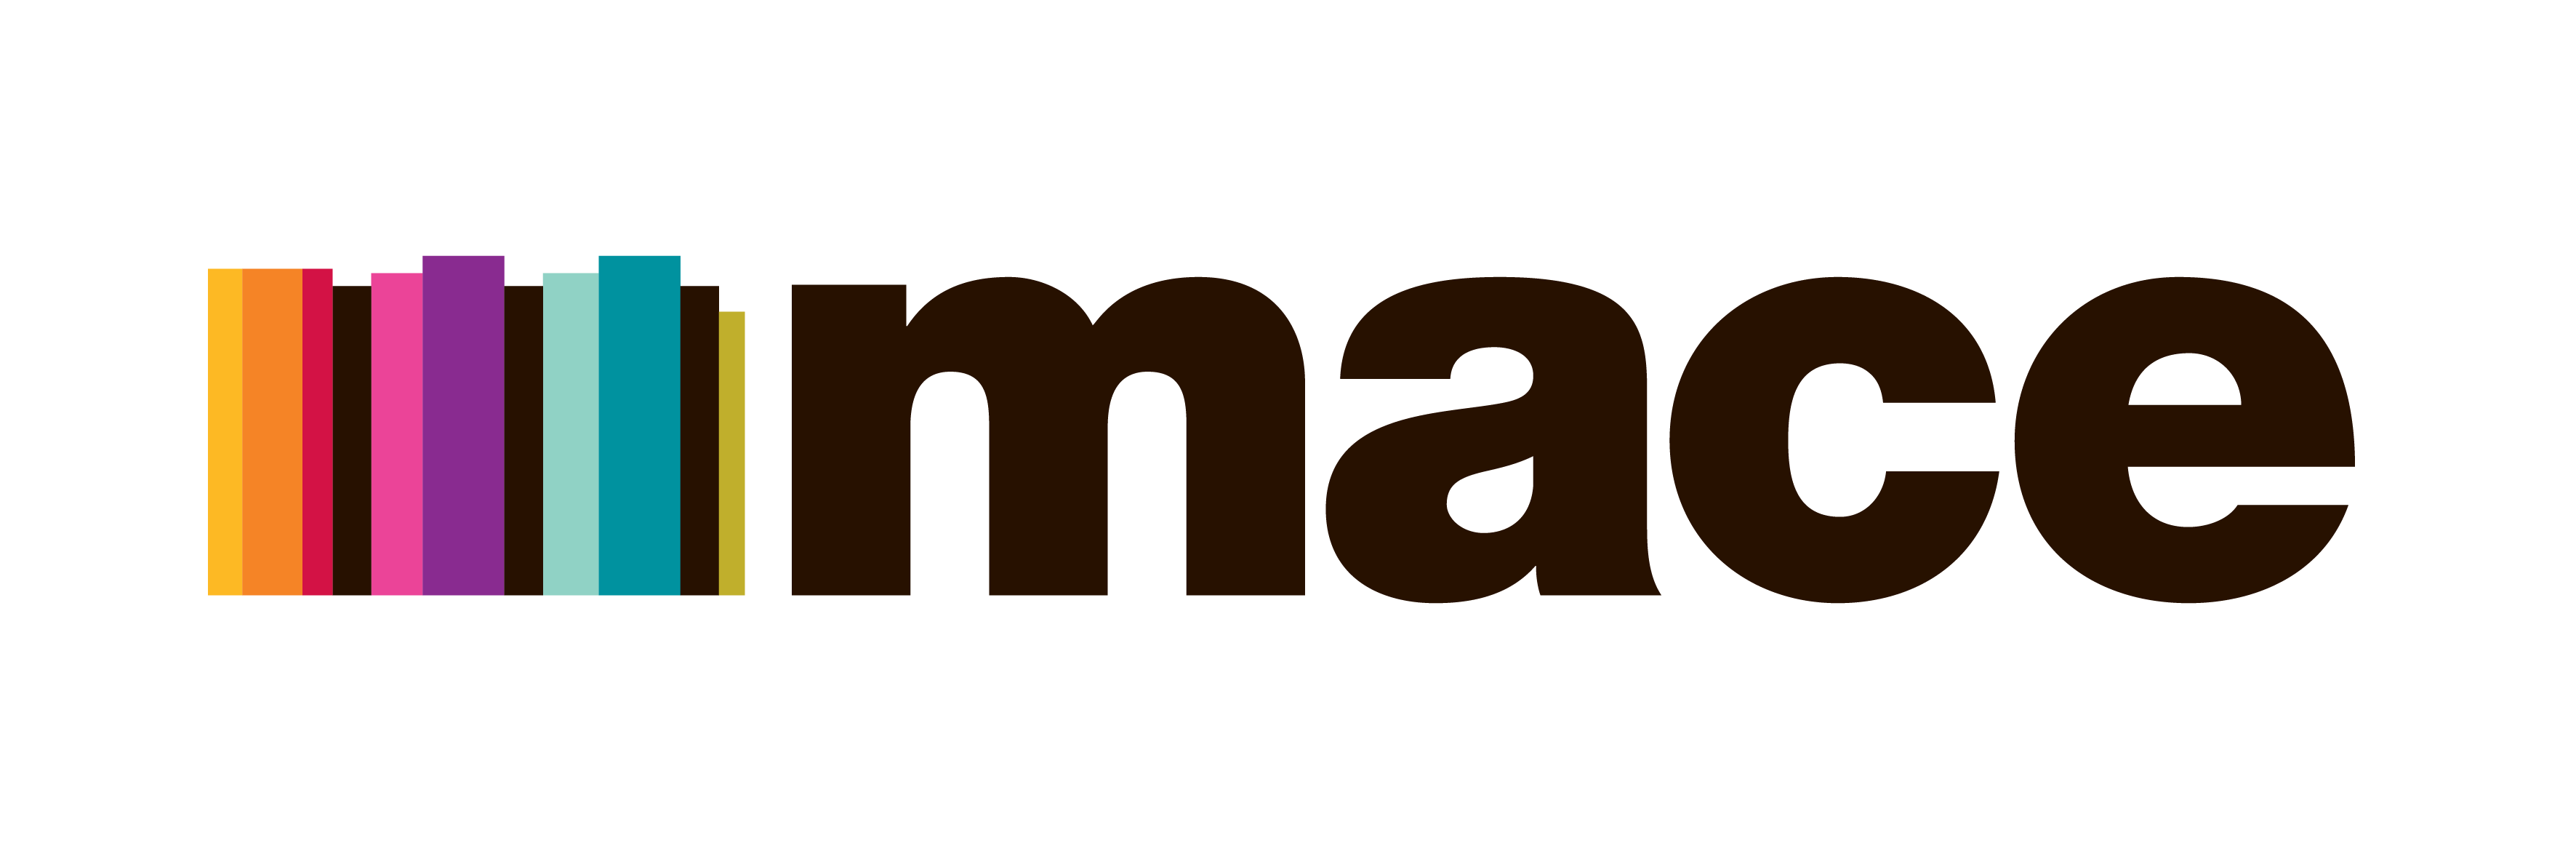 Mace Logo - mace logo - British Irish Chamber